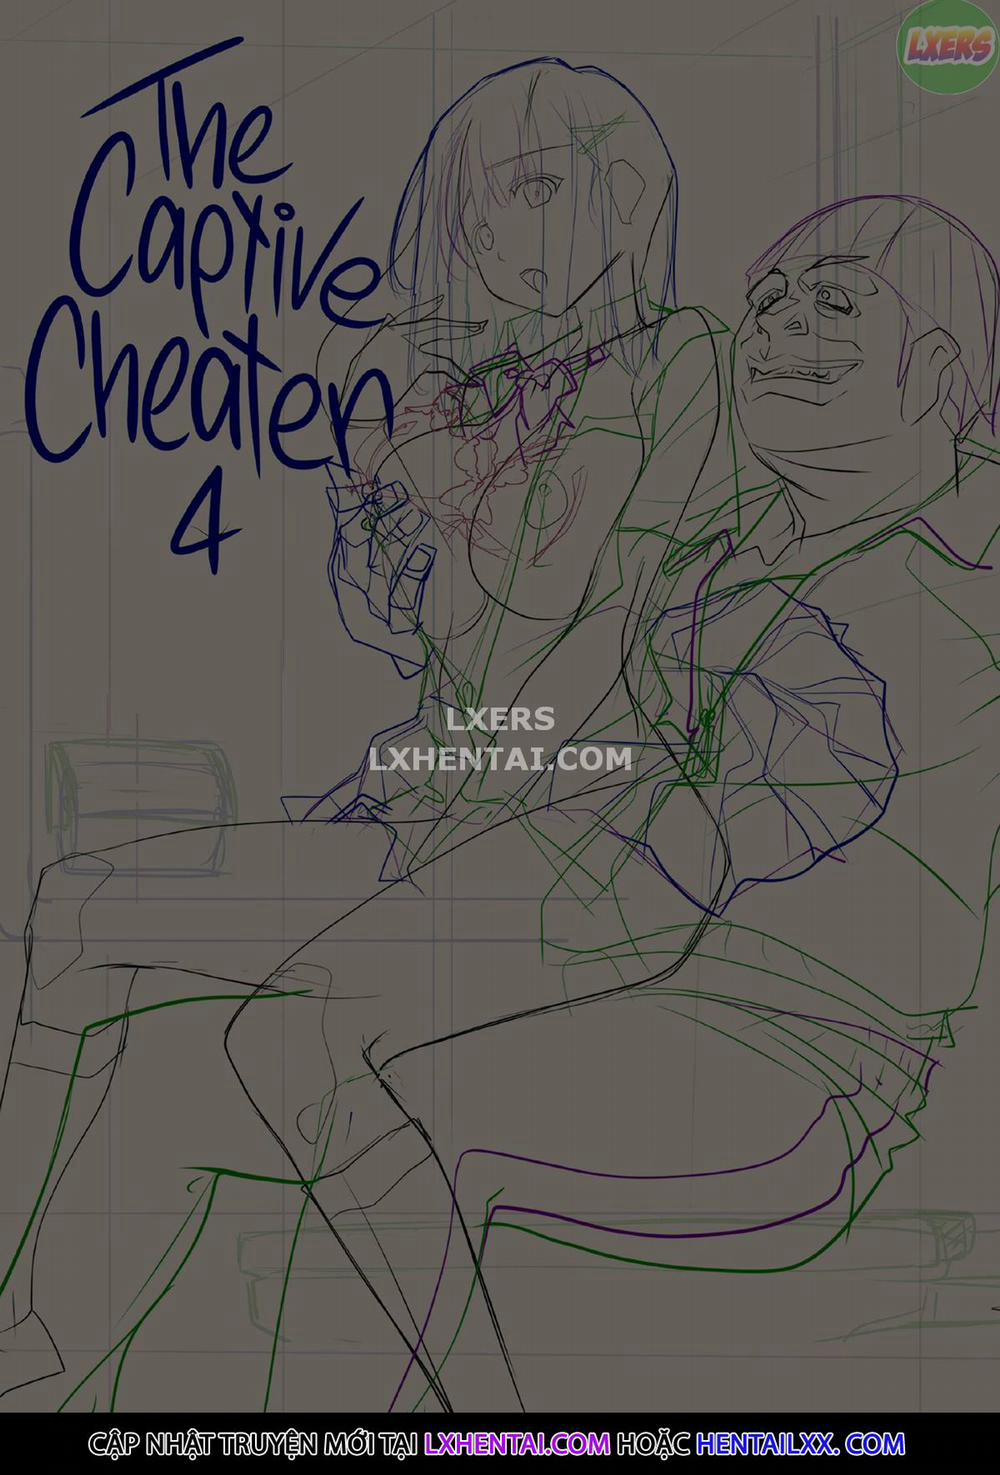 The Captive Cheater Chương 4 Trang 3